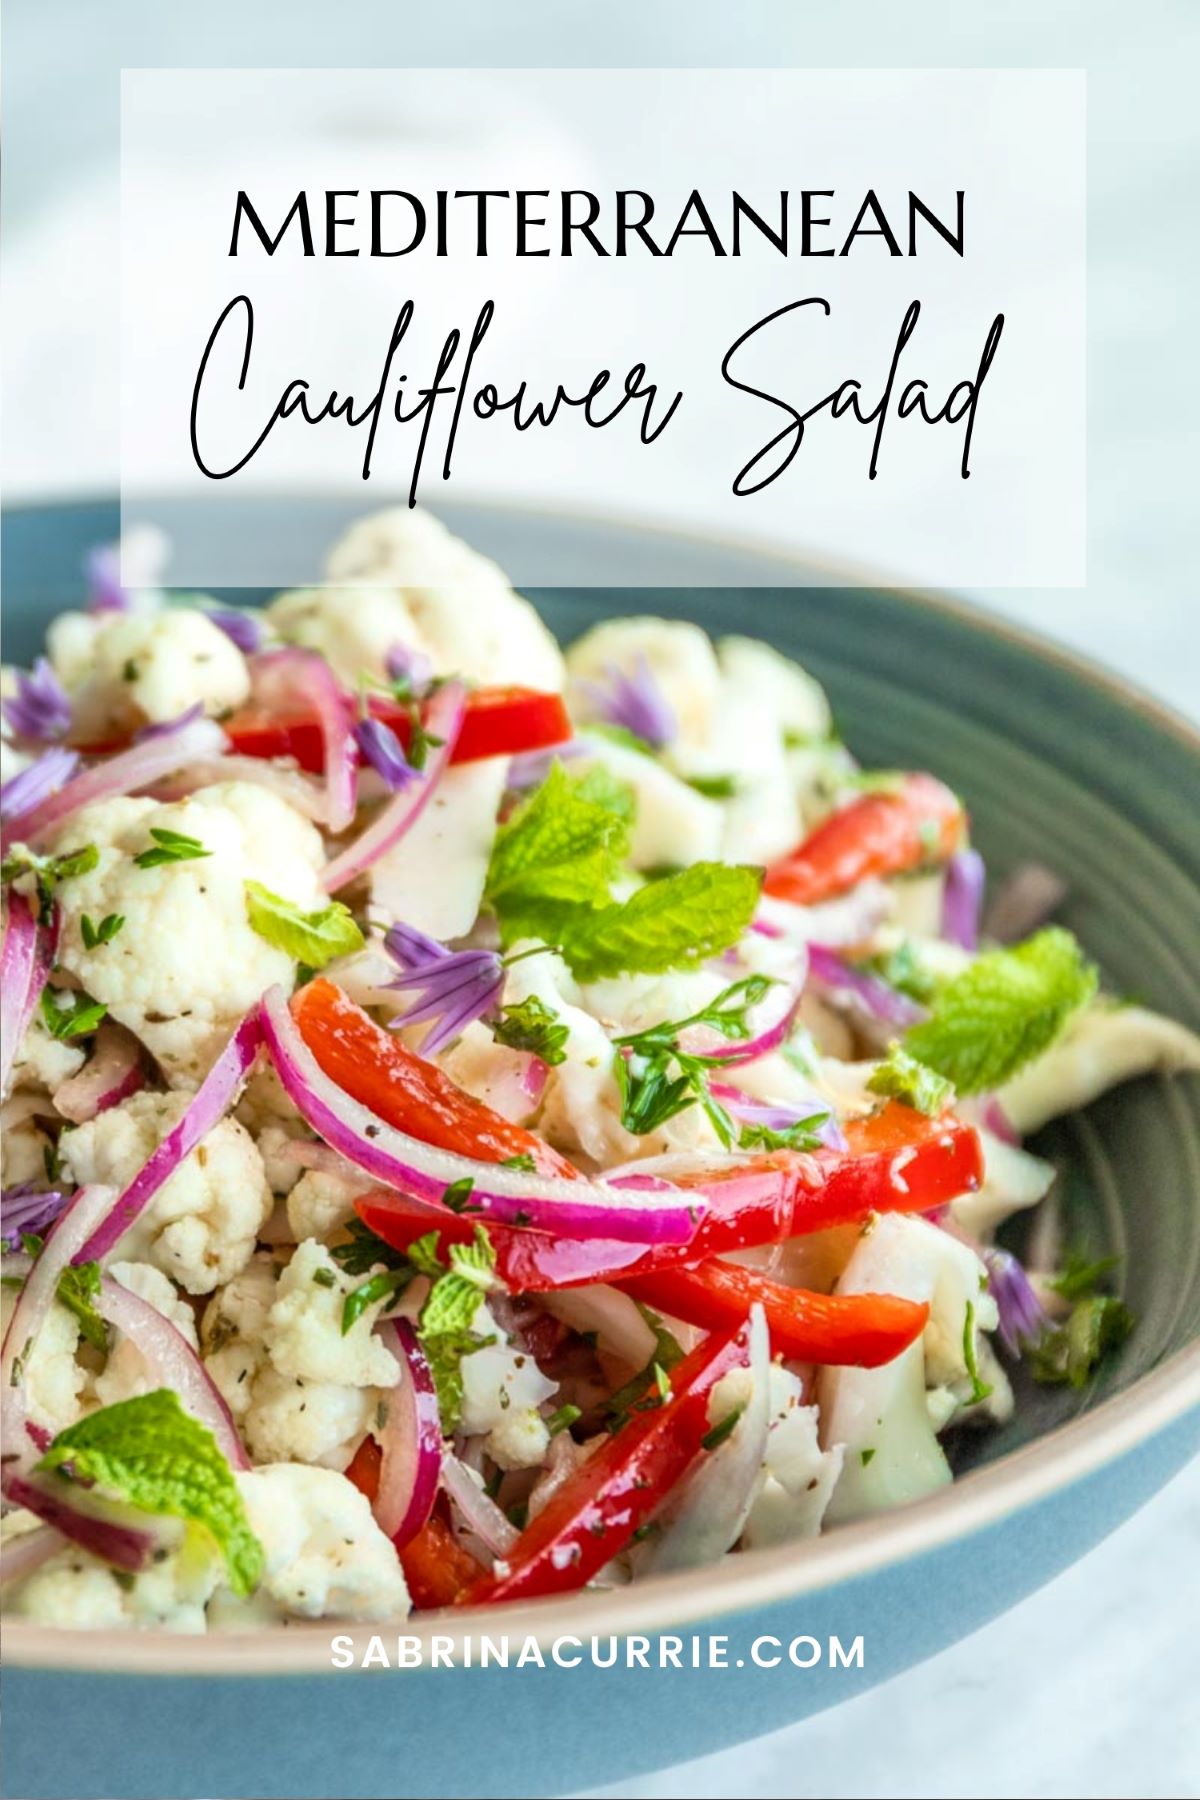 Mediterranean Cauliflower Salad Text on Picture for Pinterest